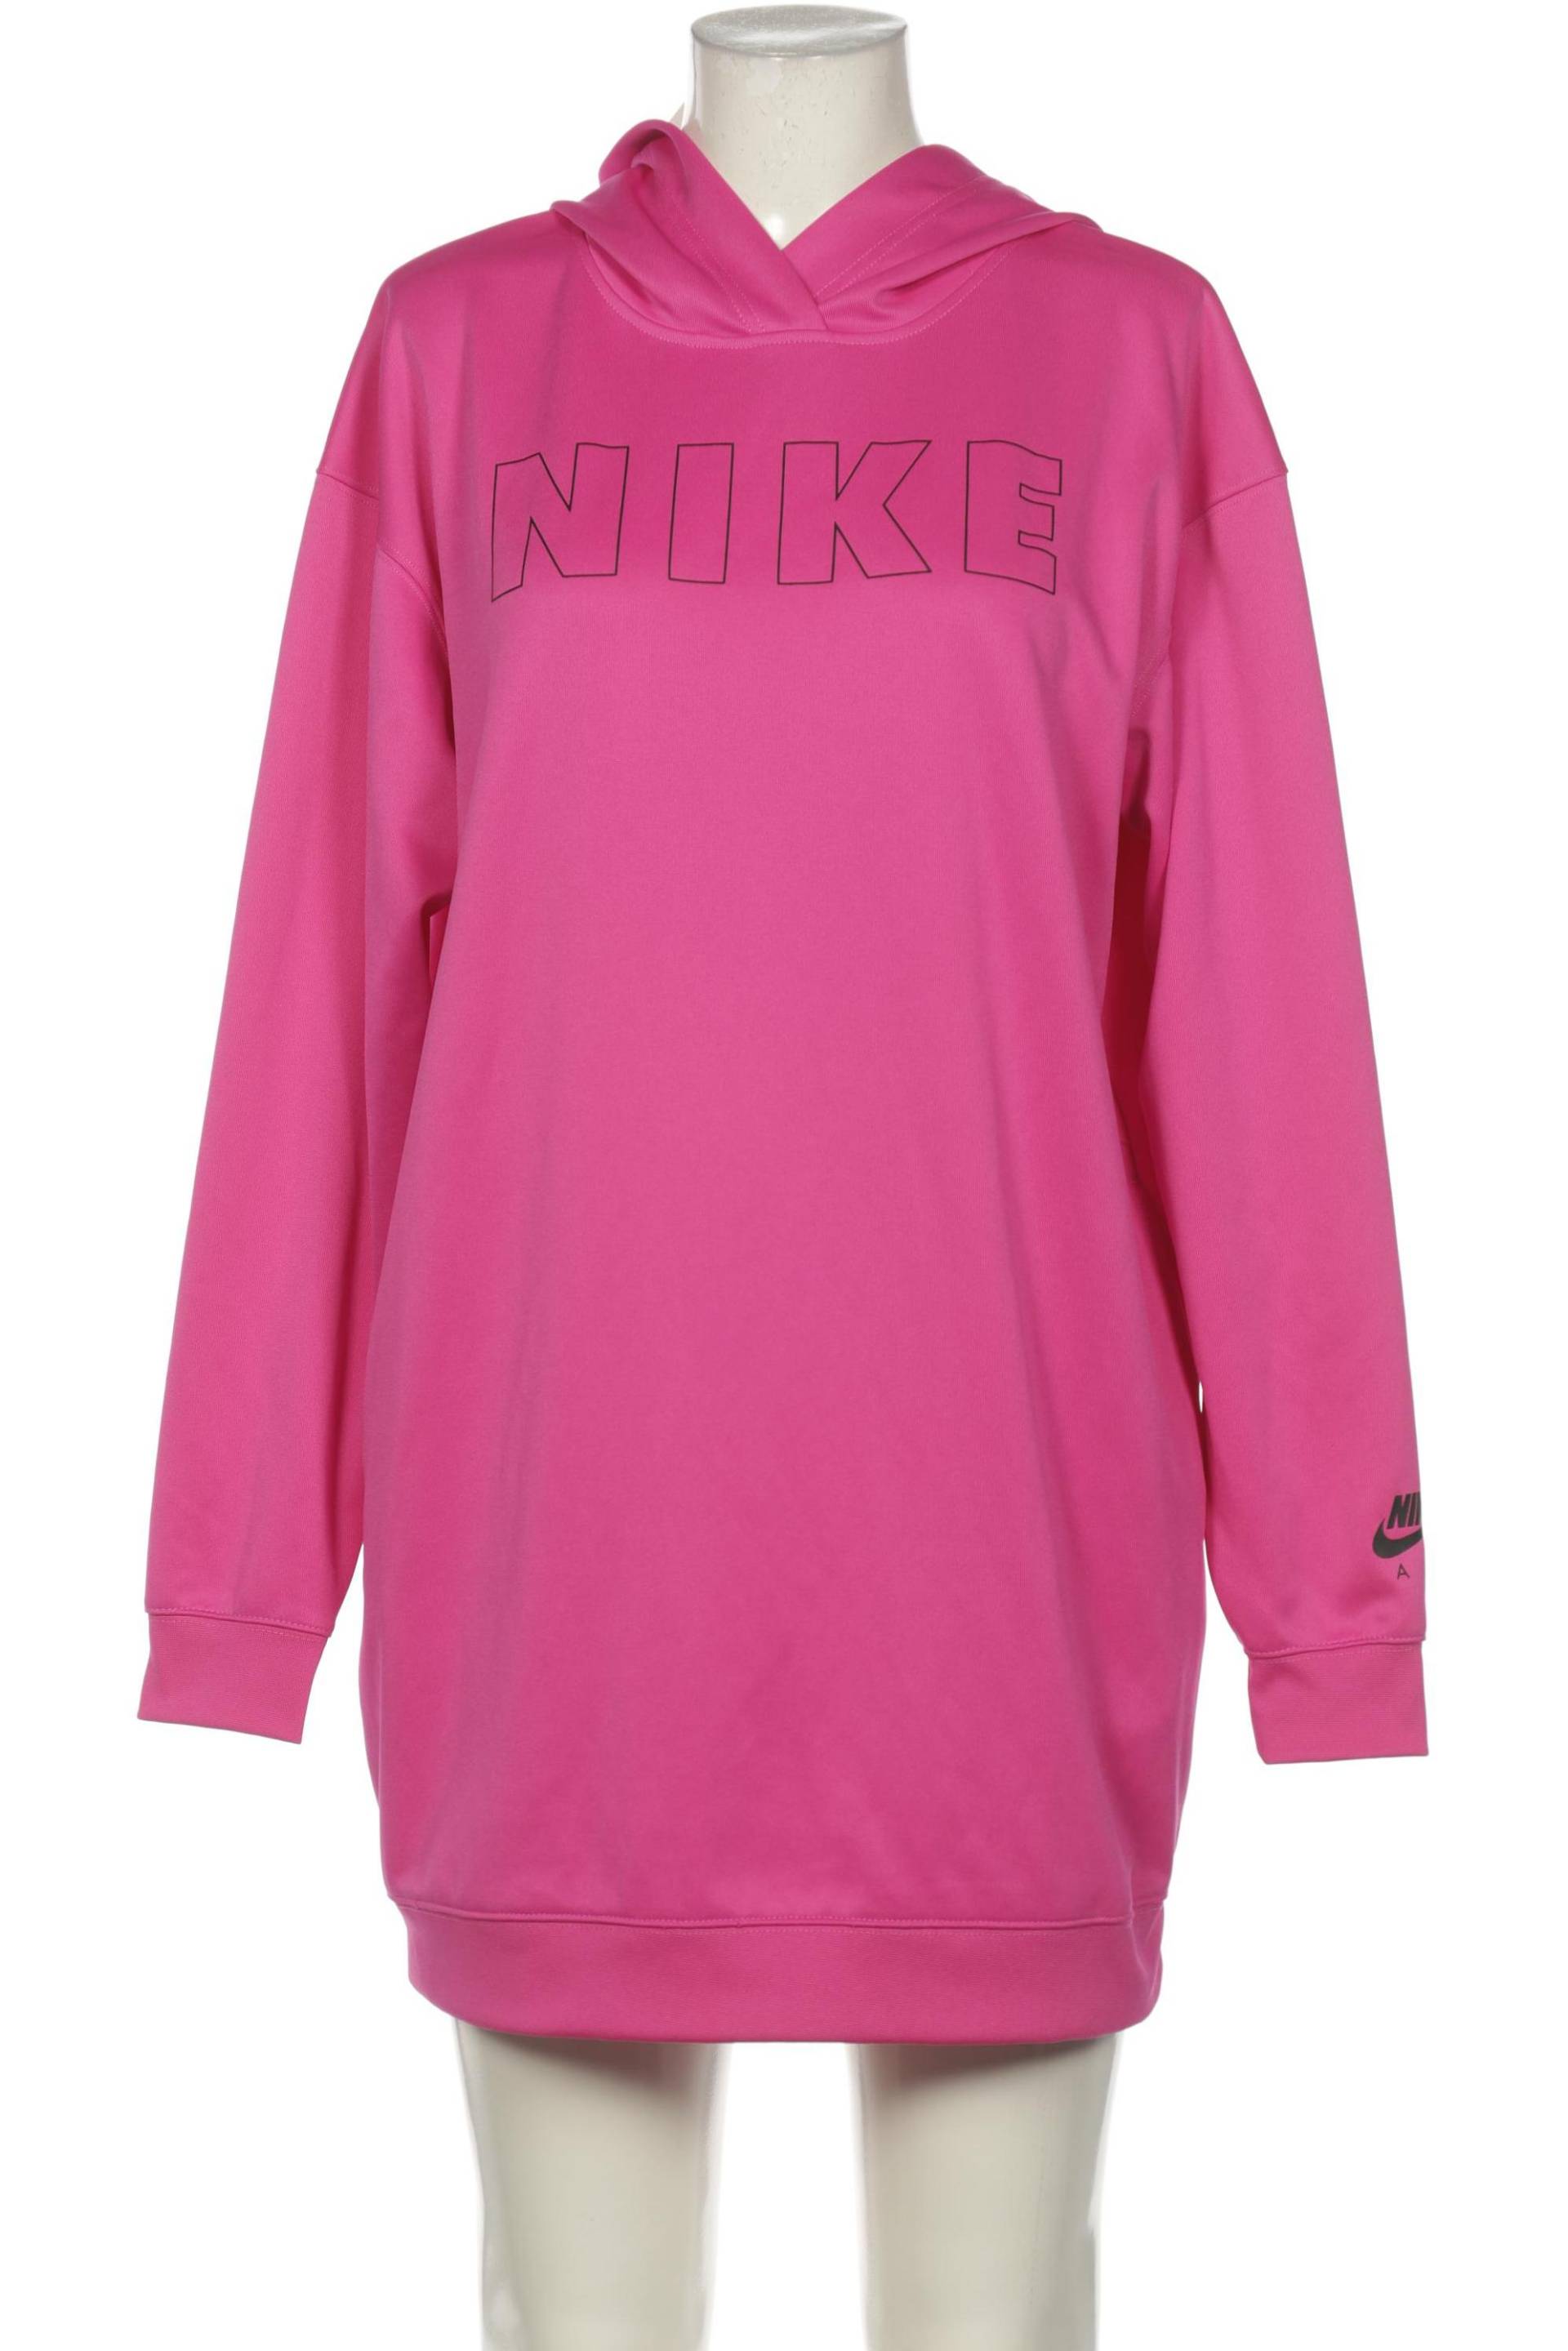 Nike Damen Kleid, pink, Gr. 38 von Nike